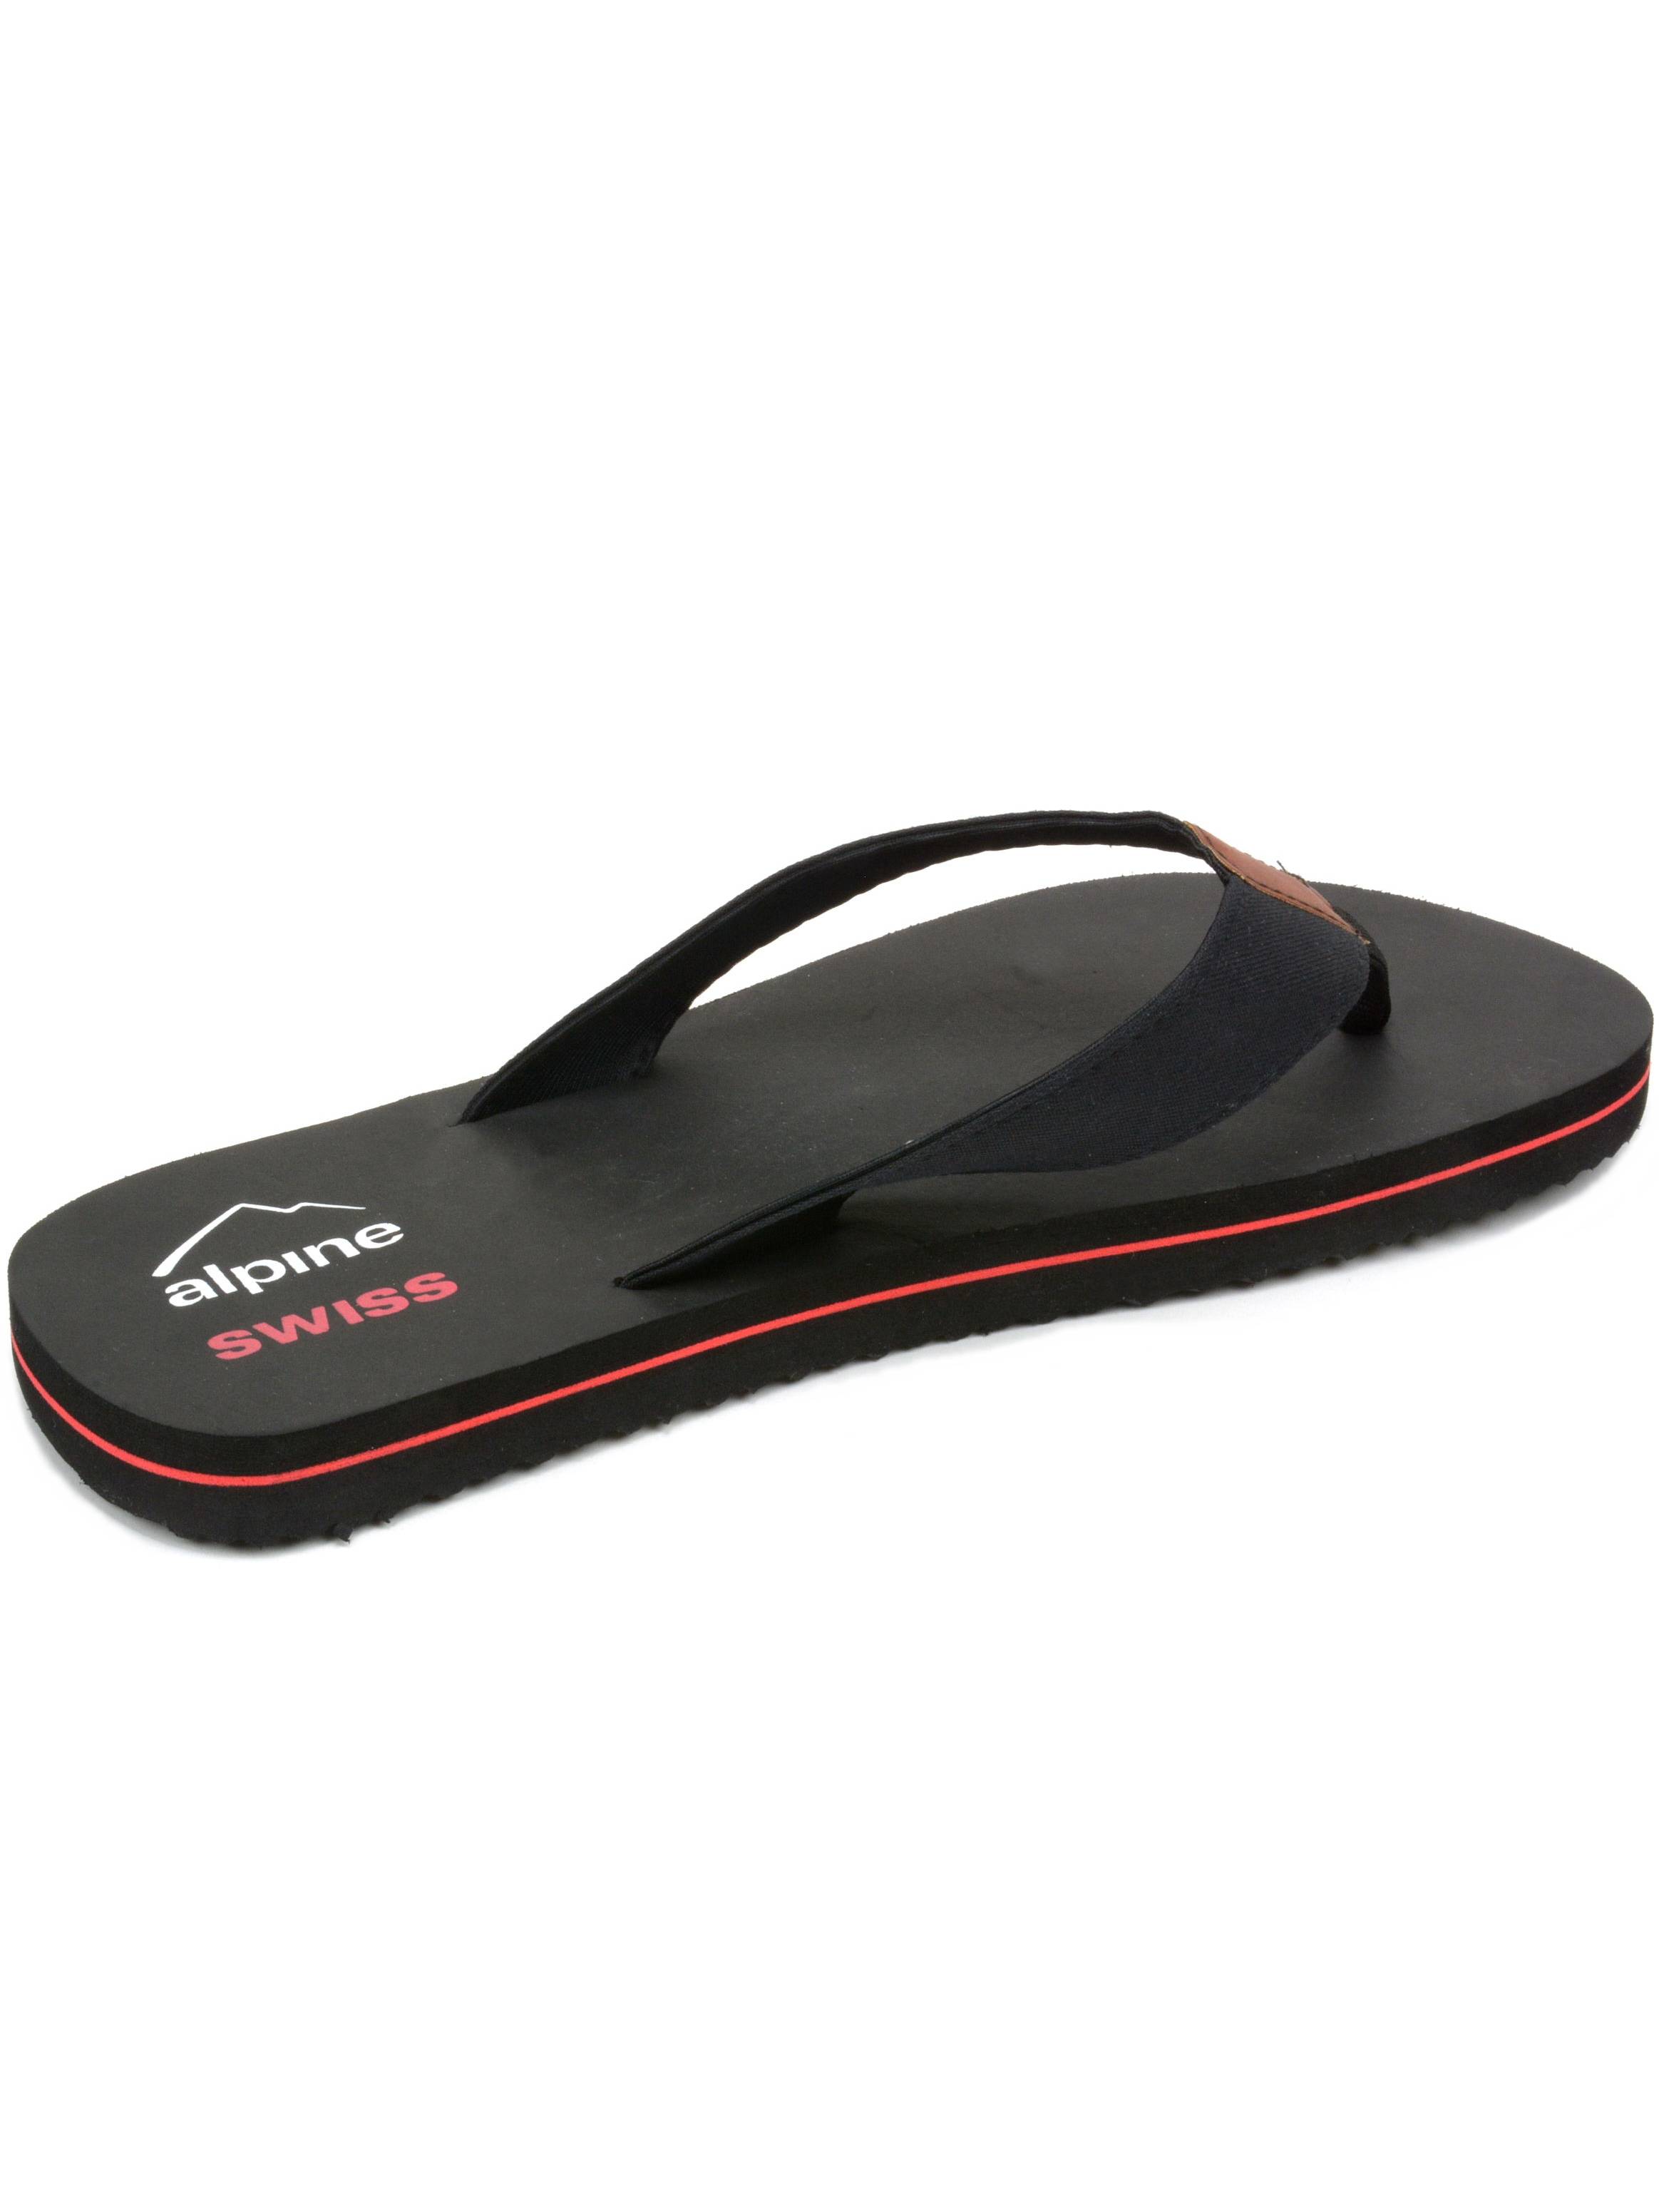 alpine swiss men's flip flops beach sandals lightweight eva sole comfort thongs - image 5 of 6